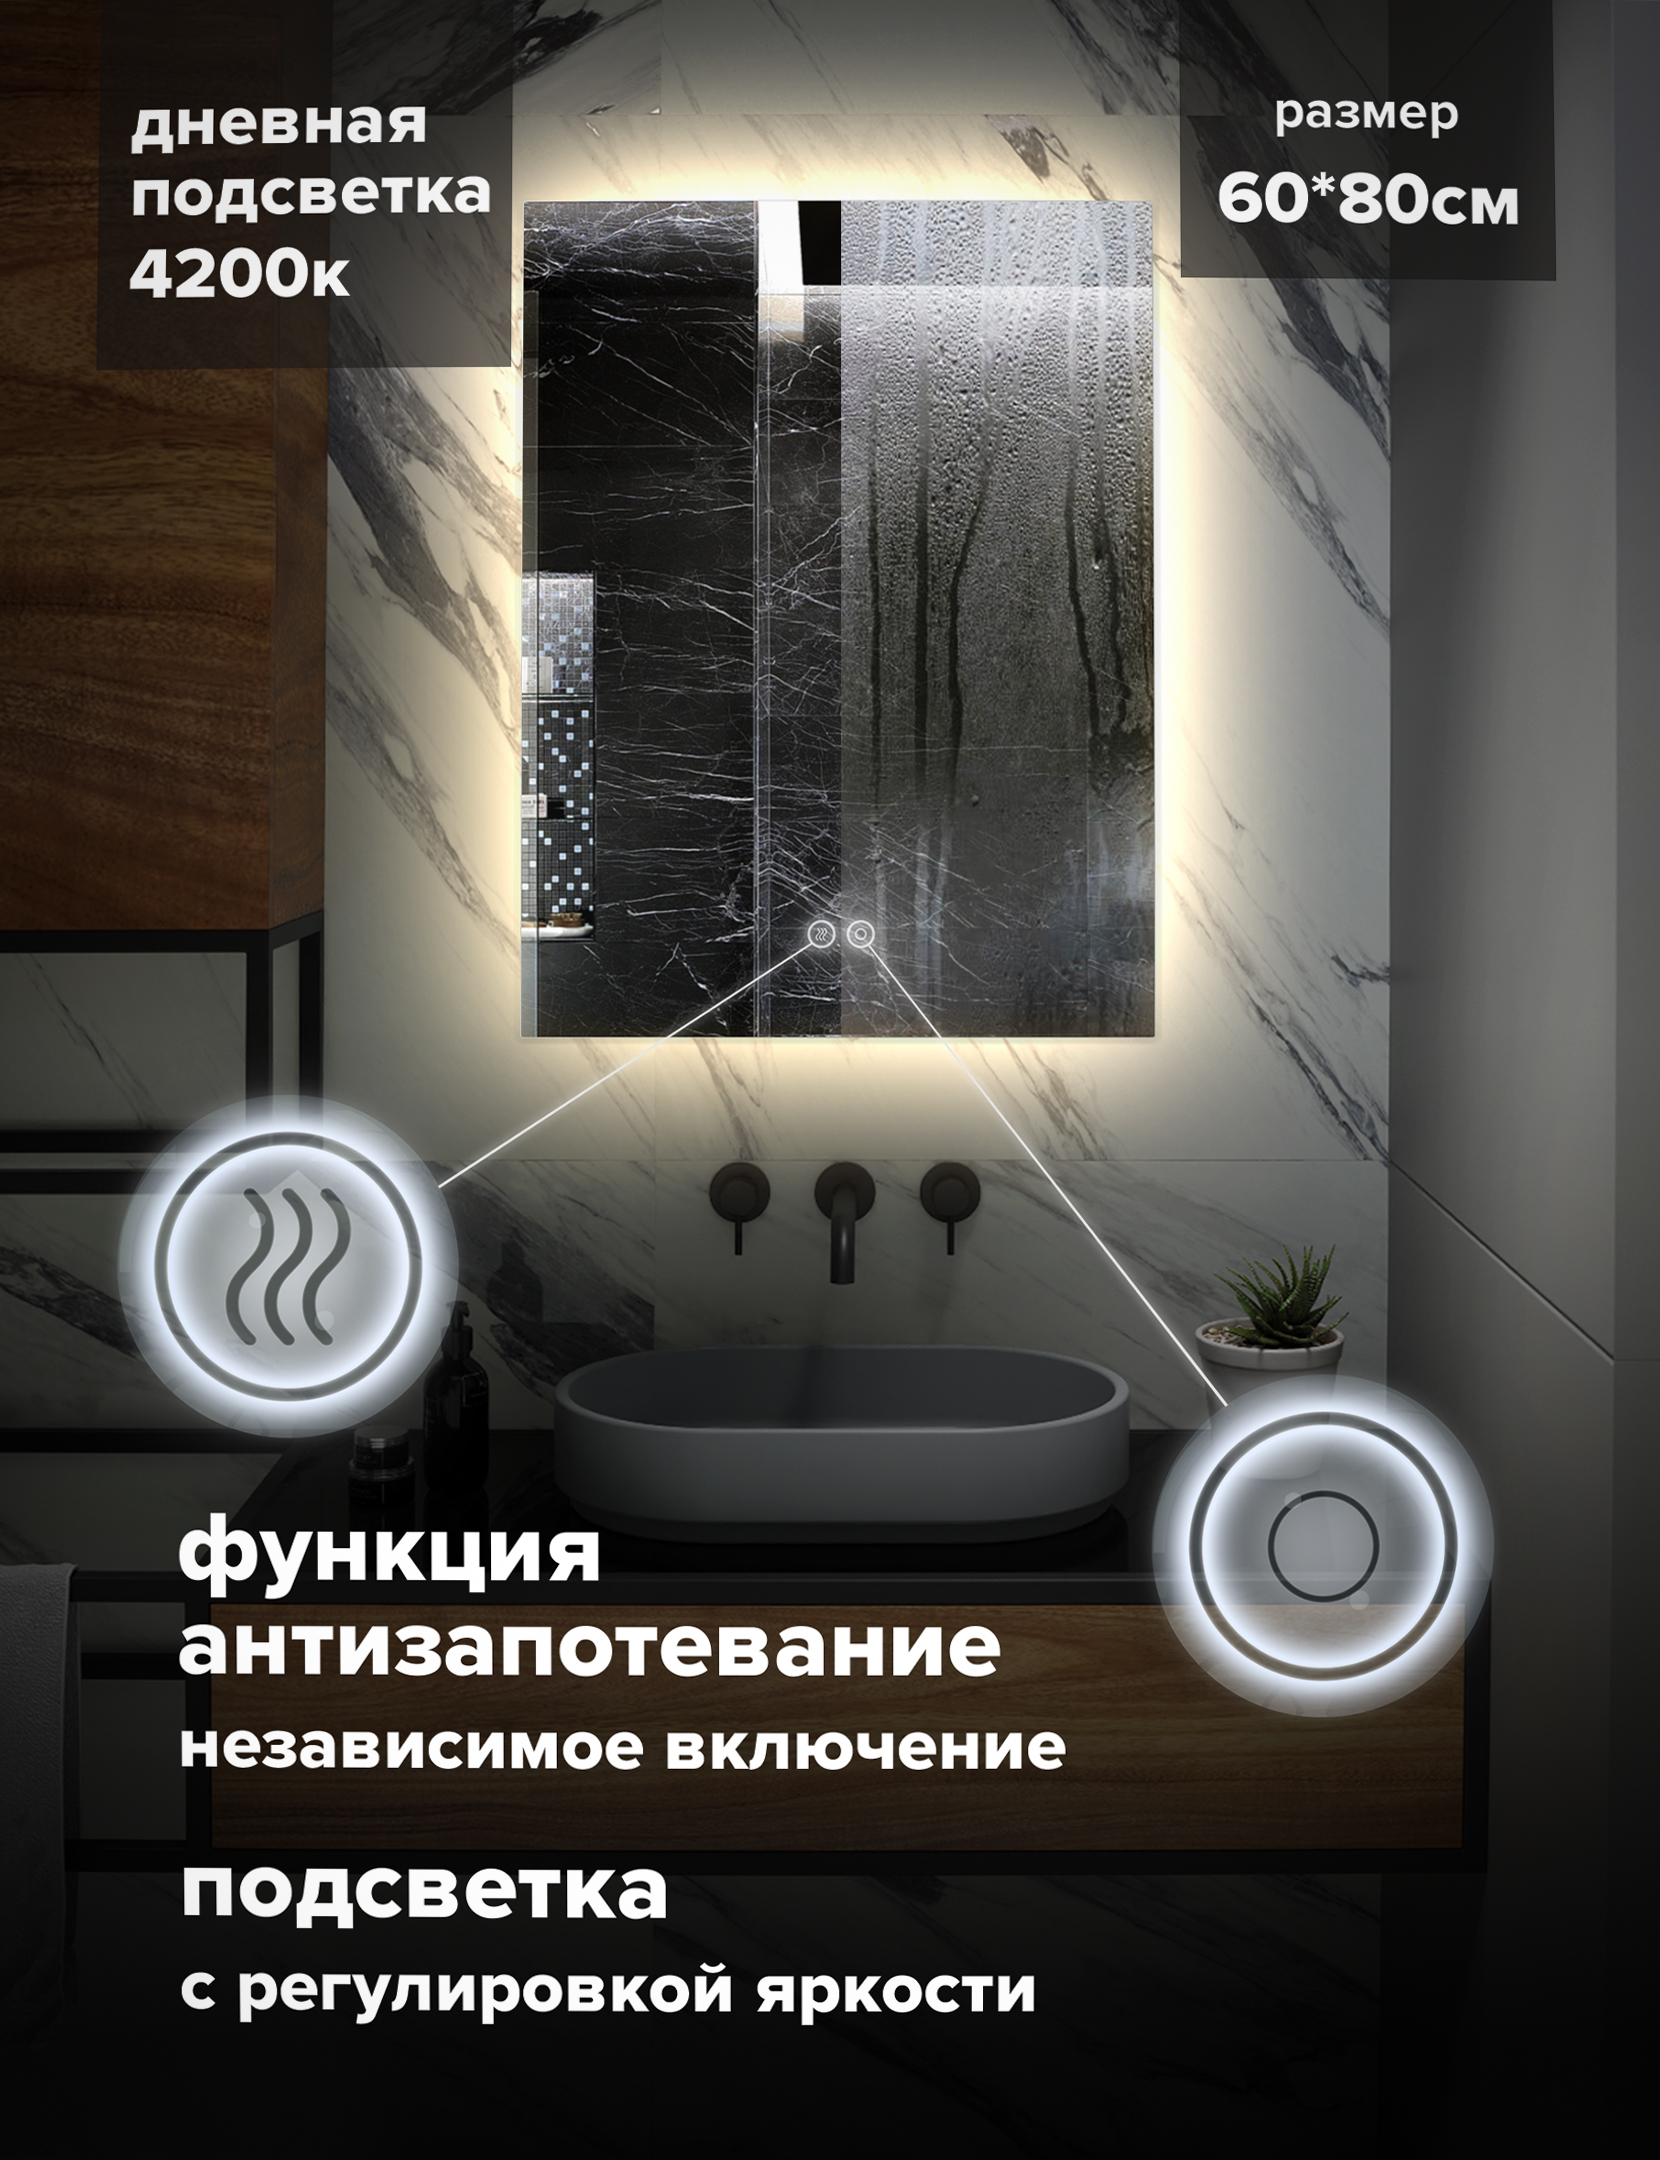 Зеркало для ванной Alfa Mirrors с дневной подсветкой 4200К, обогрев, 60х80см, арт. Ek-68Ad